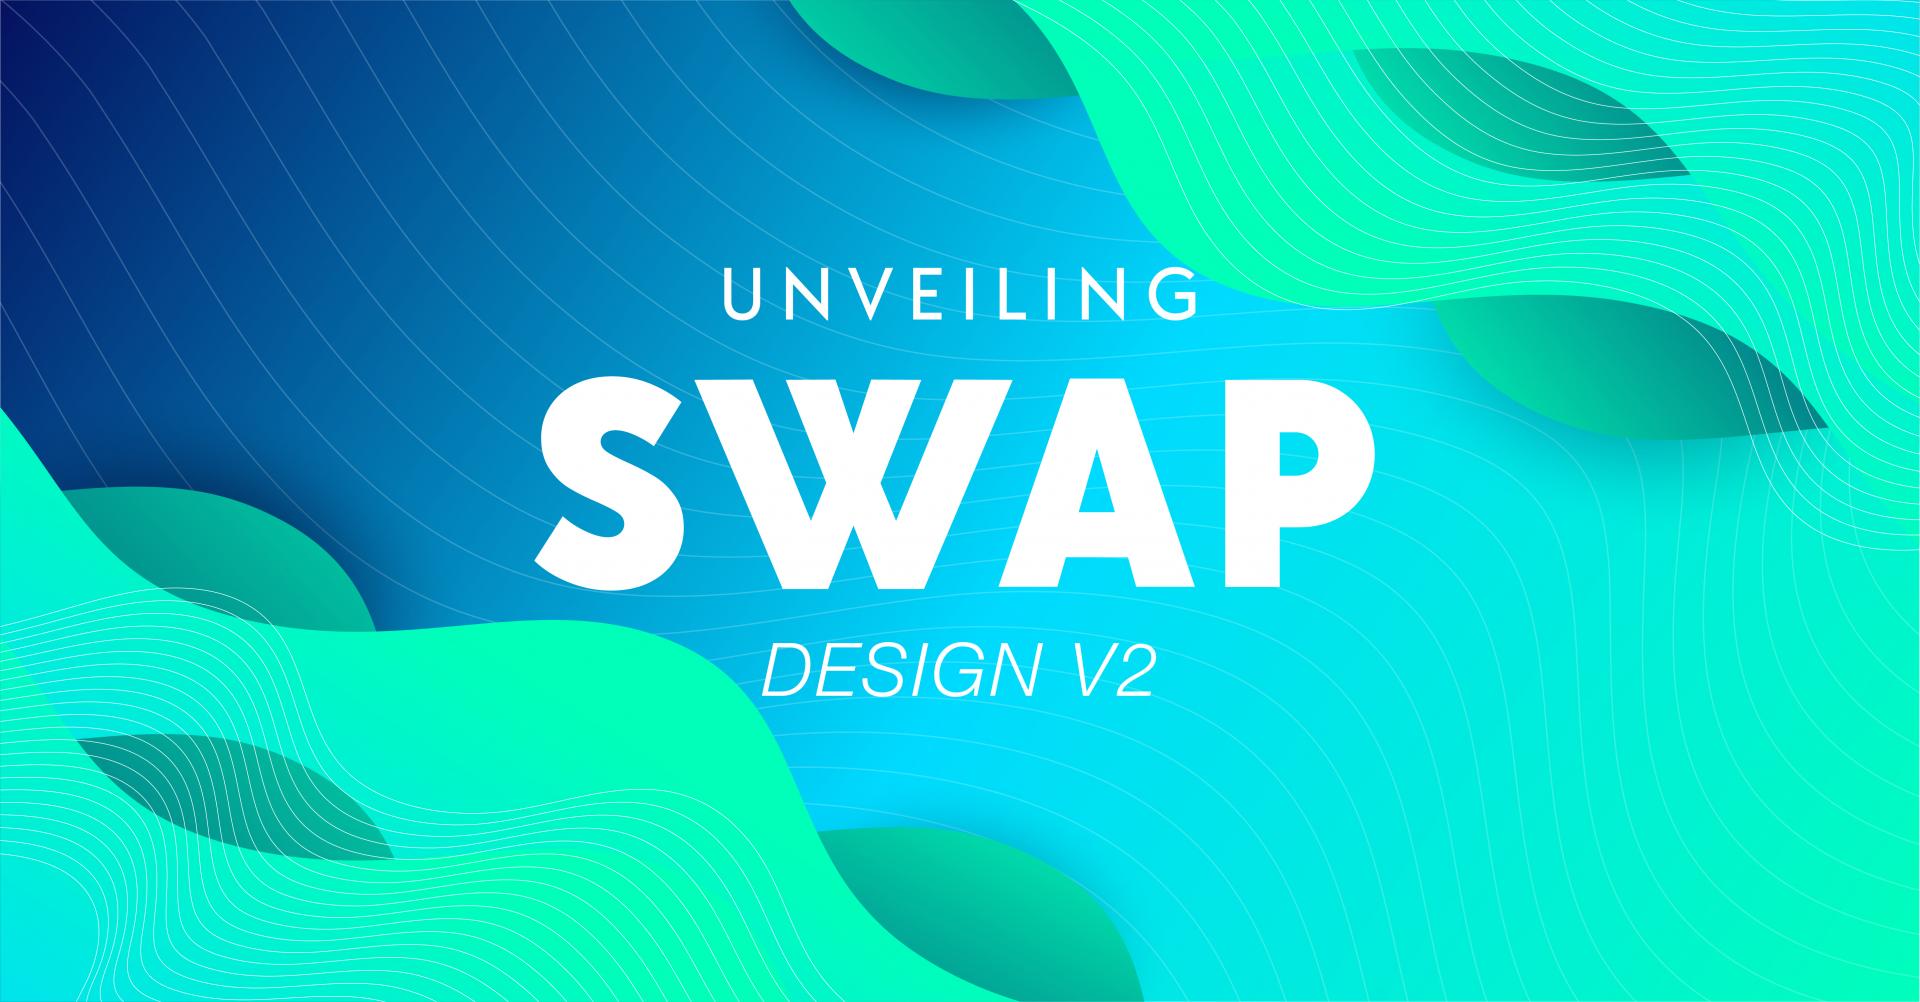 Impossible Finance Unveils Swap Design V2, Bringing Host ...